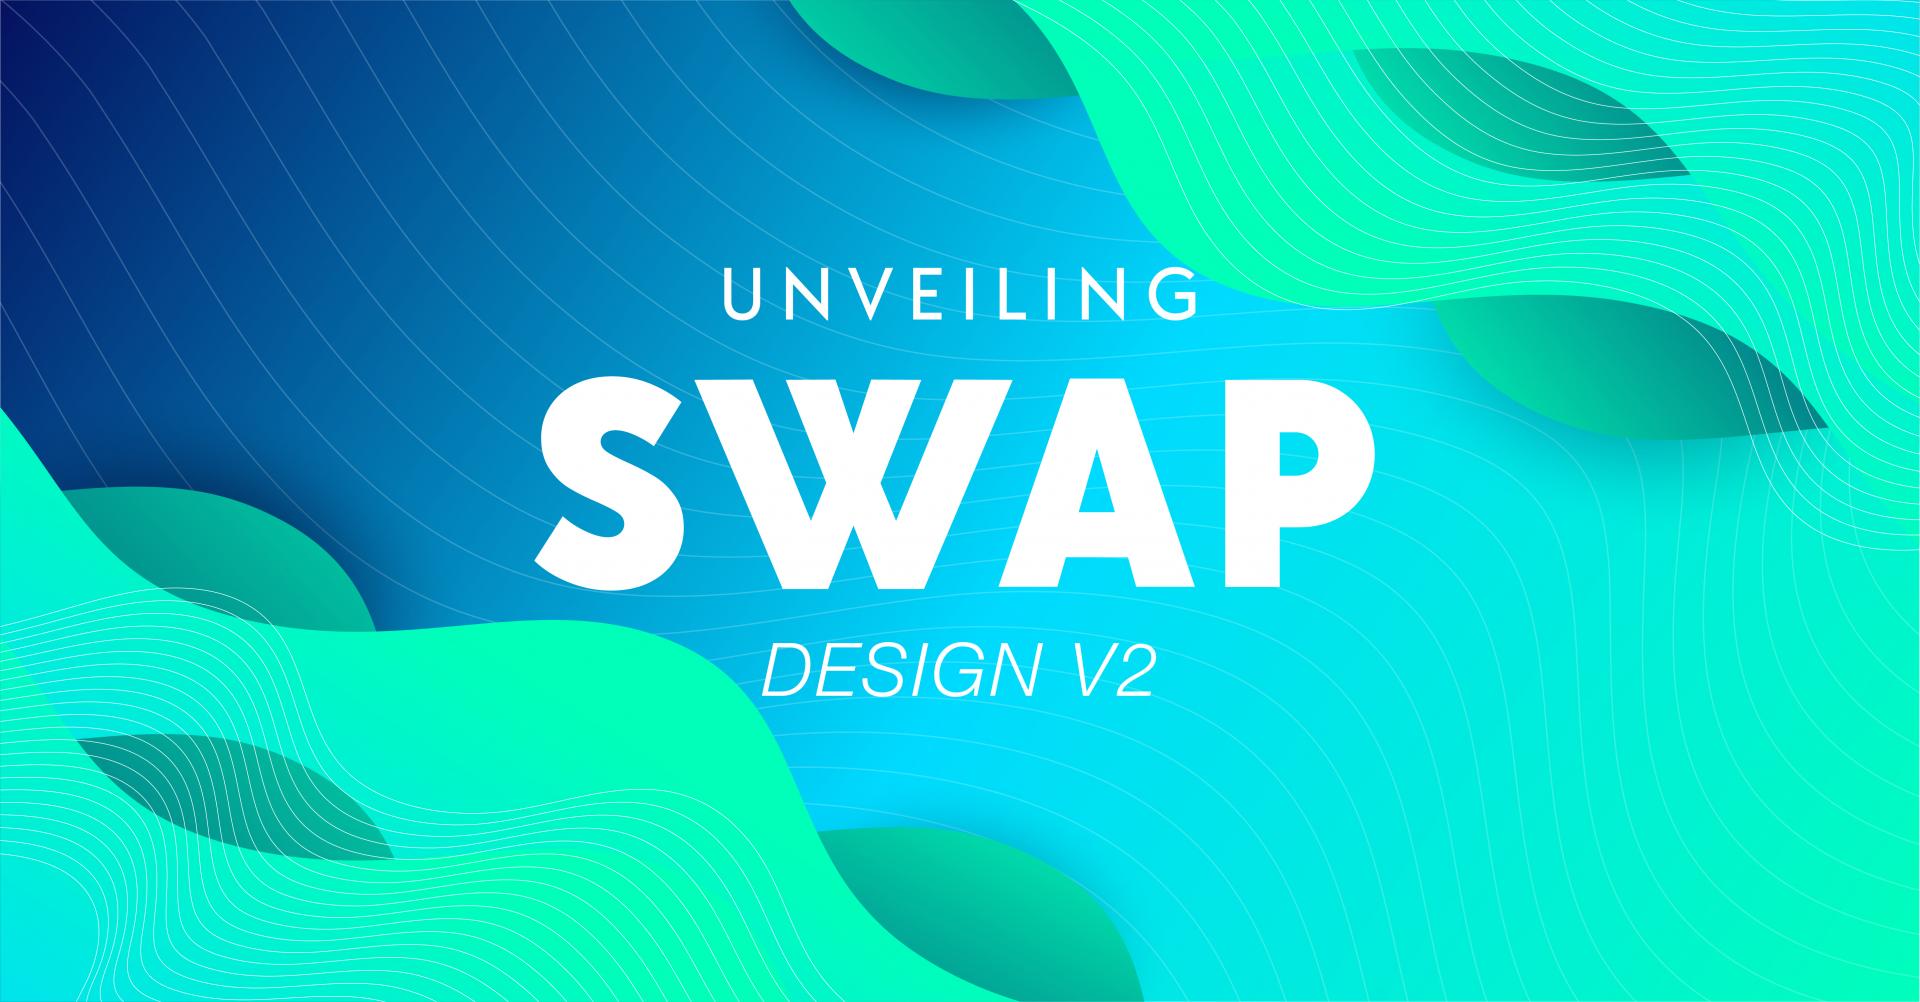 Impossible Finance Unveils Swap Design V2, Bringing Host ...